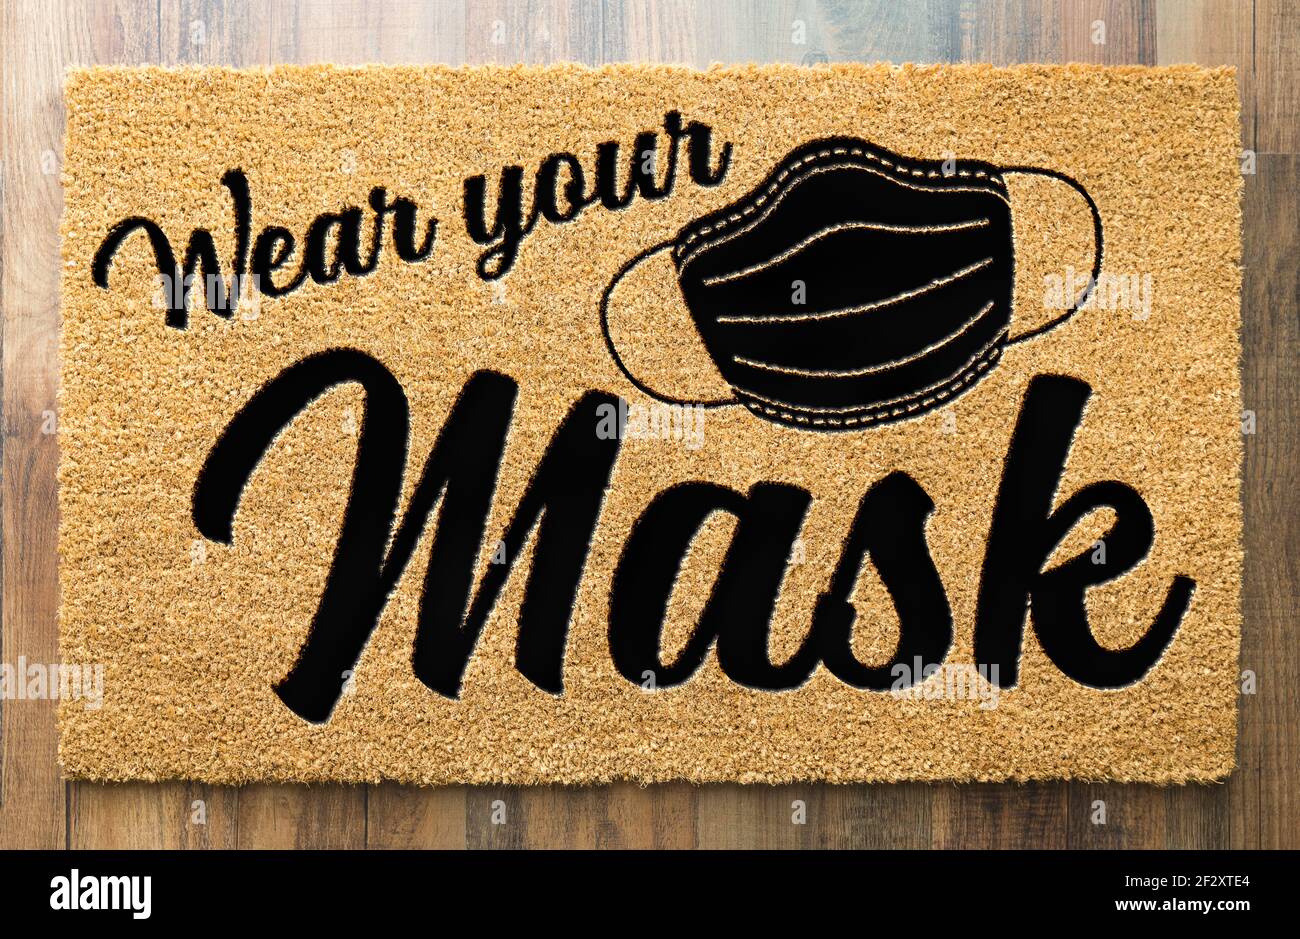 Wear Your Mask Welcome Door Mat on Wood Floor. Stock Photo